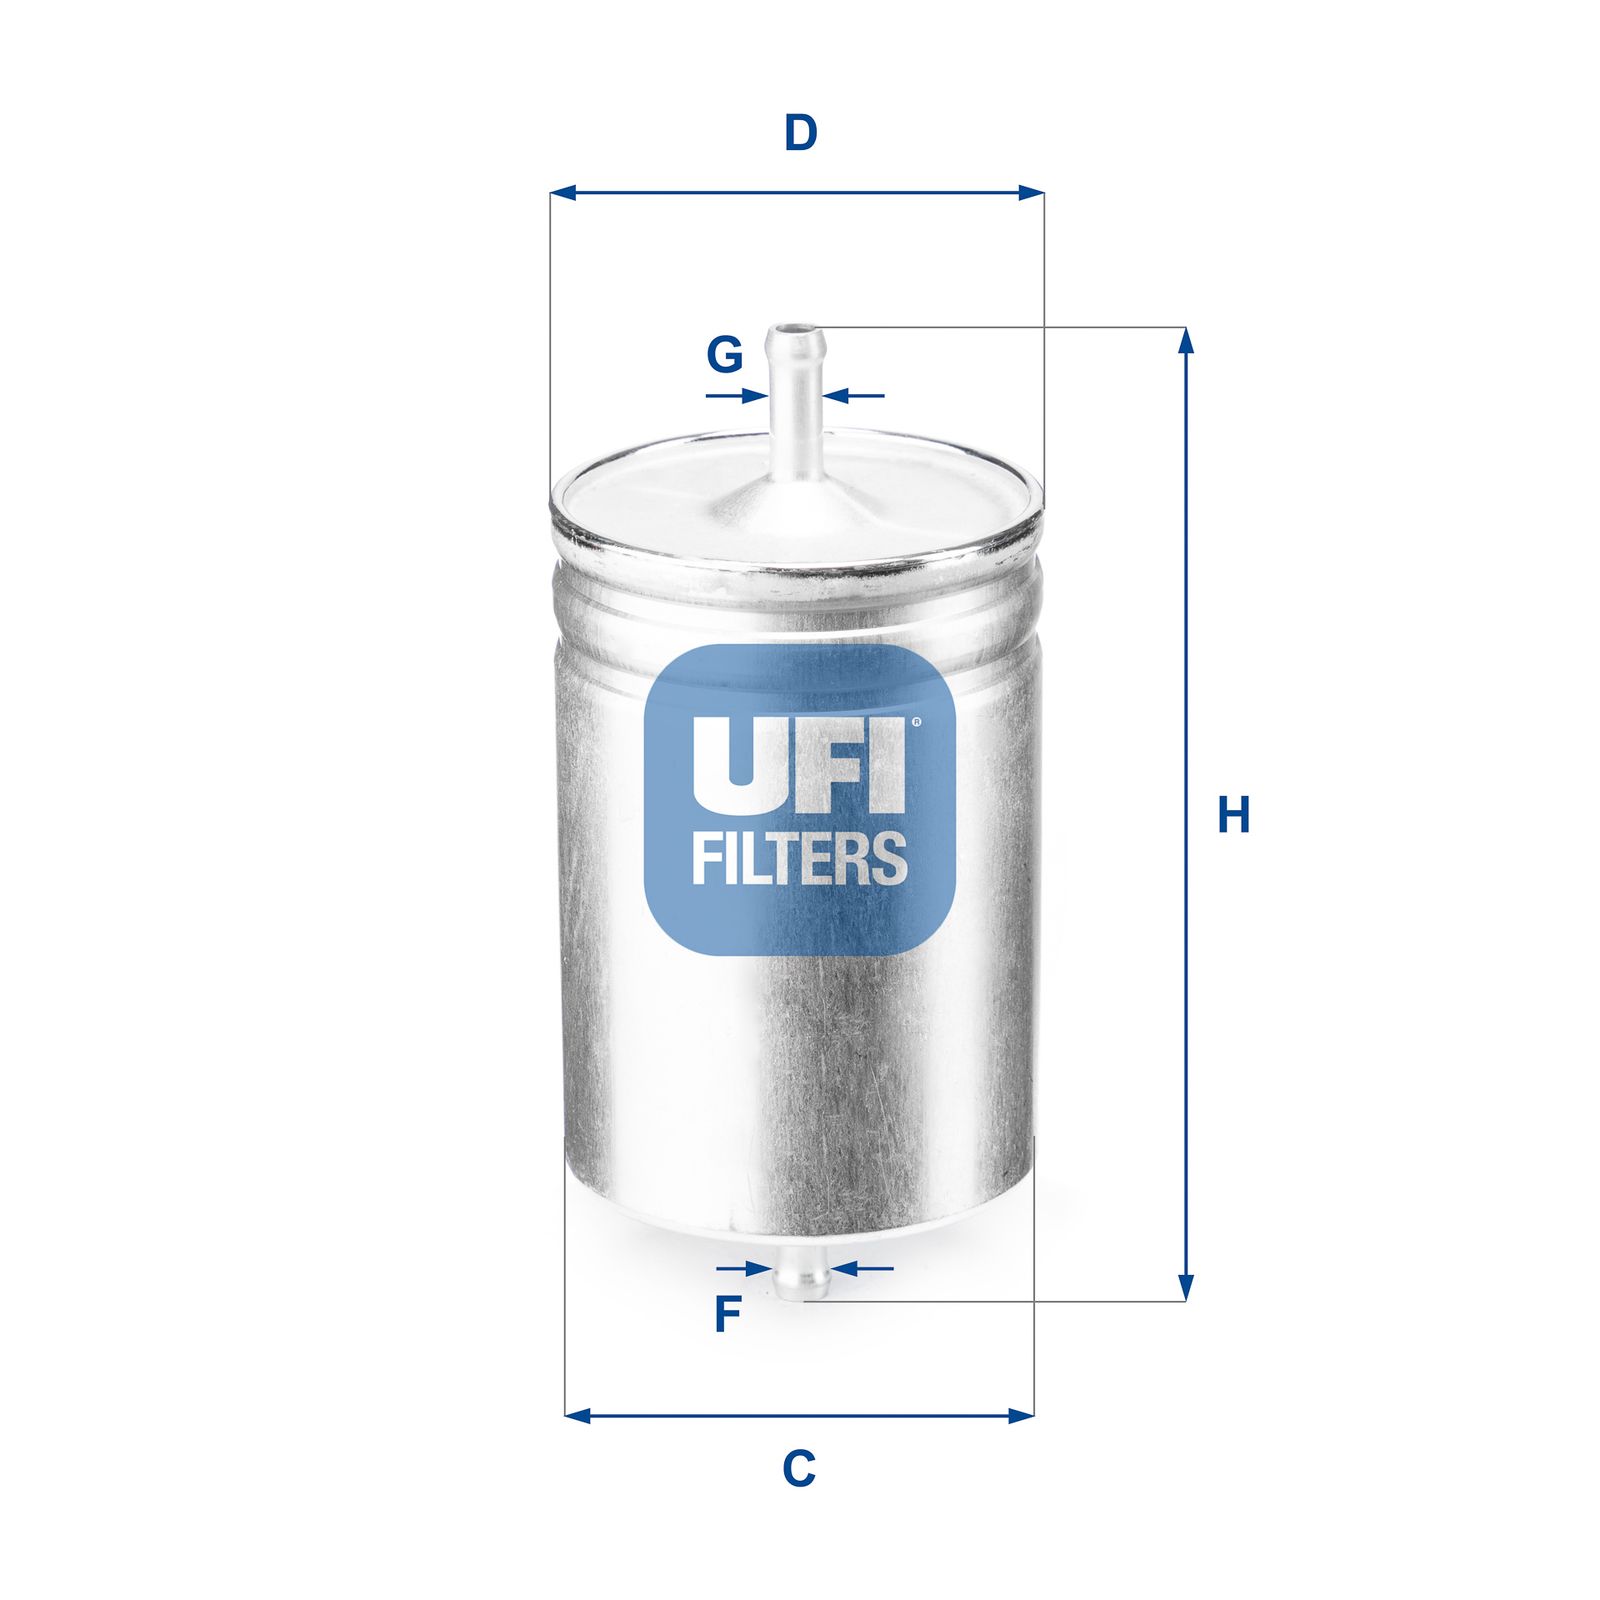 Palivový filtr UFI 31.583.00